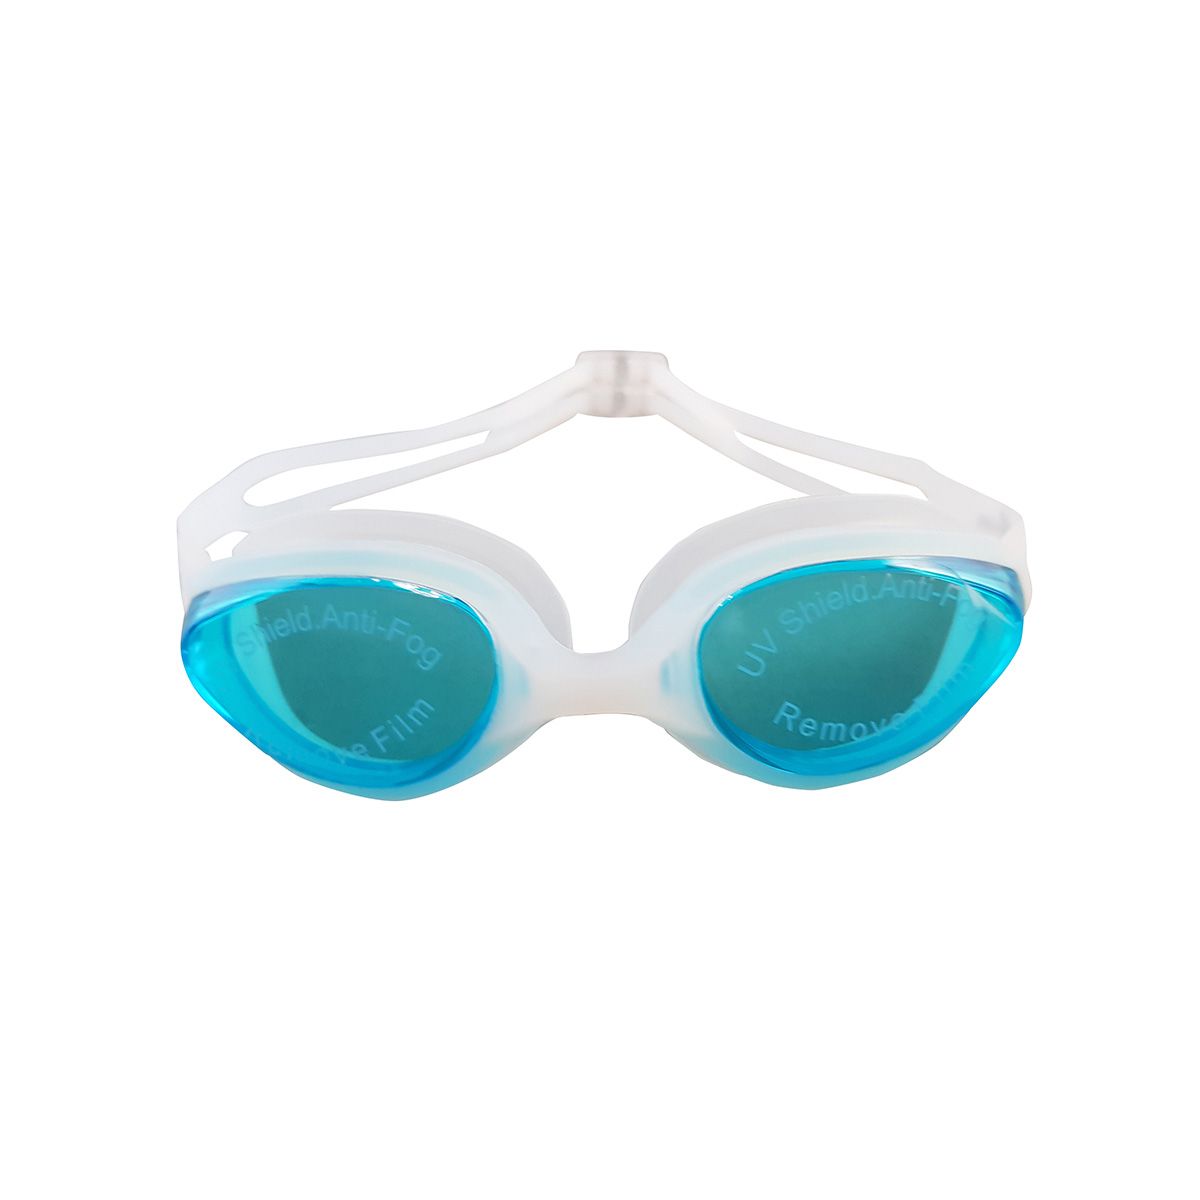  عینک شنا فری شارک مدل YG-2300 -  - 8